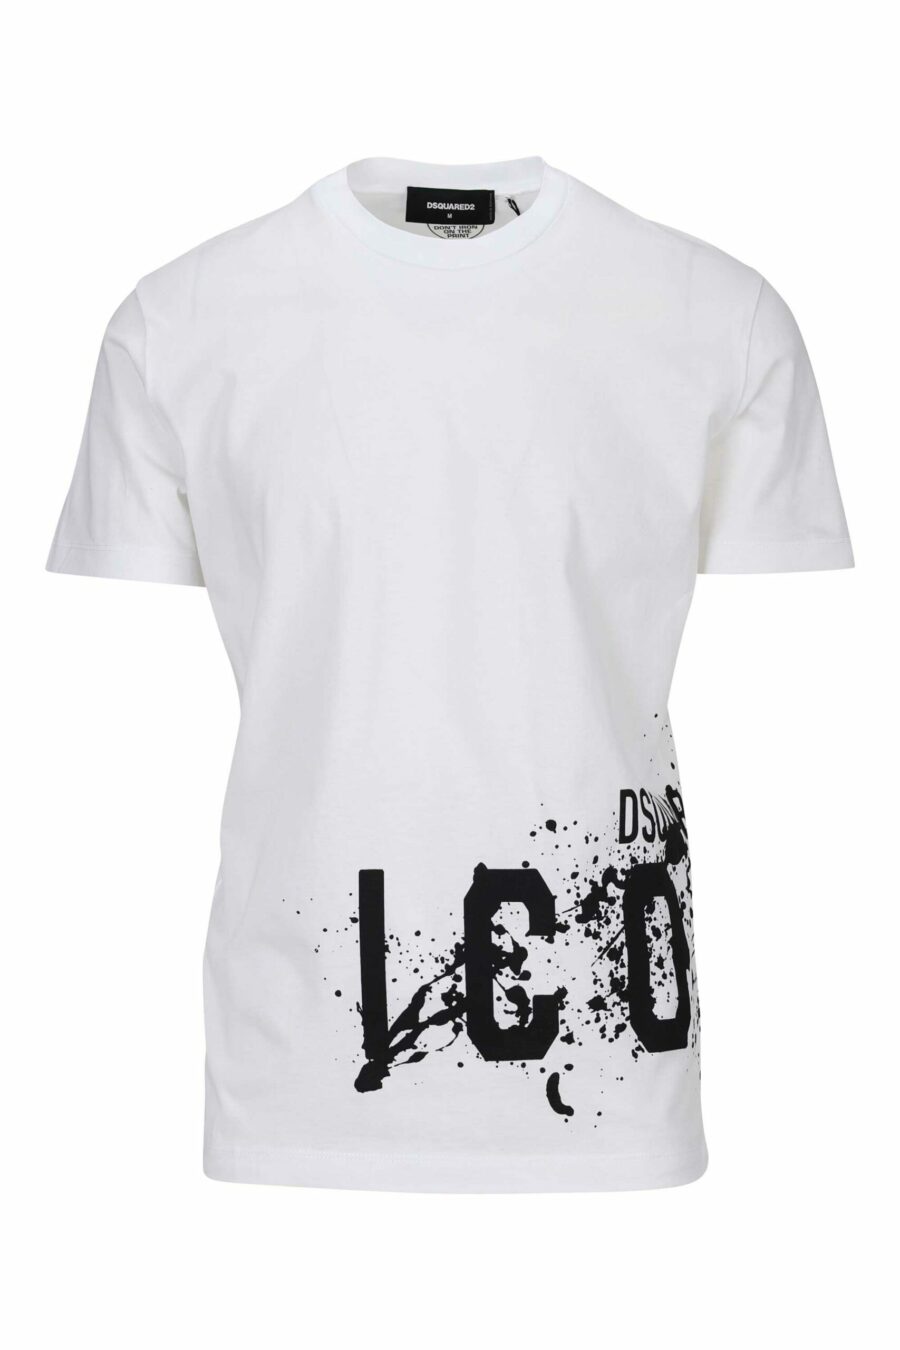 Weißes T-Shirt mit "icon splash" Maxilogo darunter - 8054148358549 skaliert